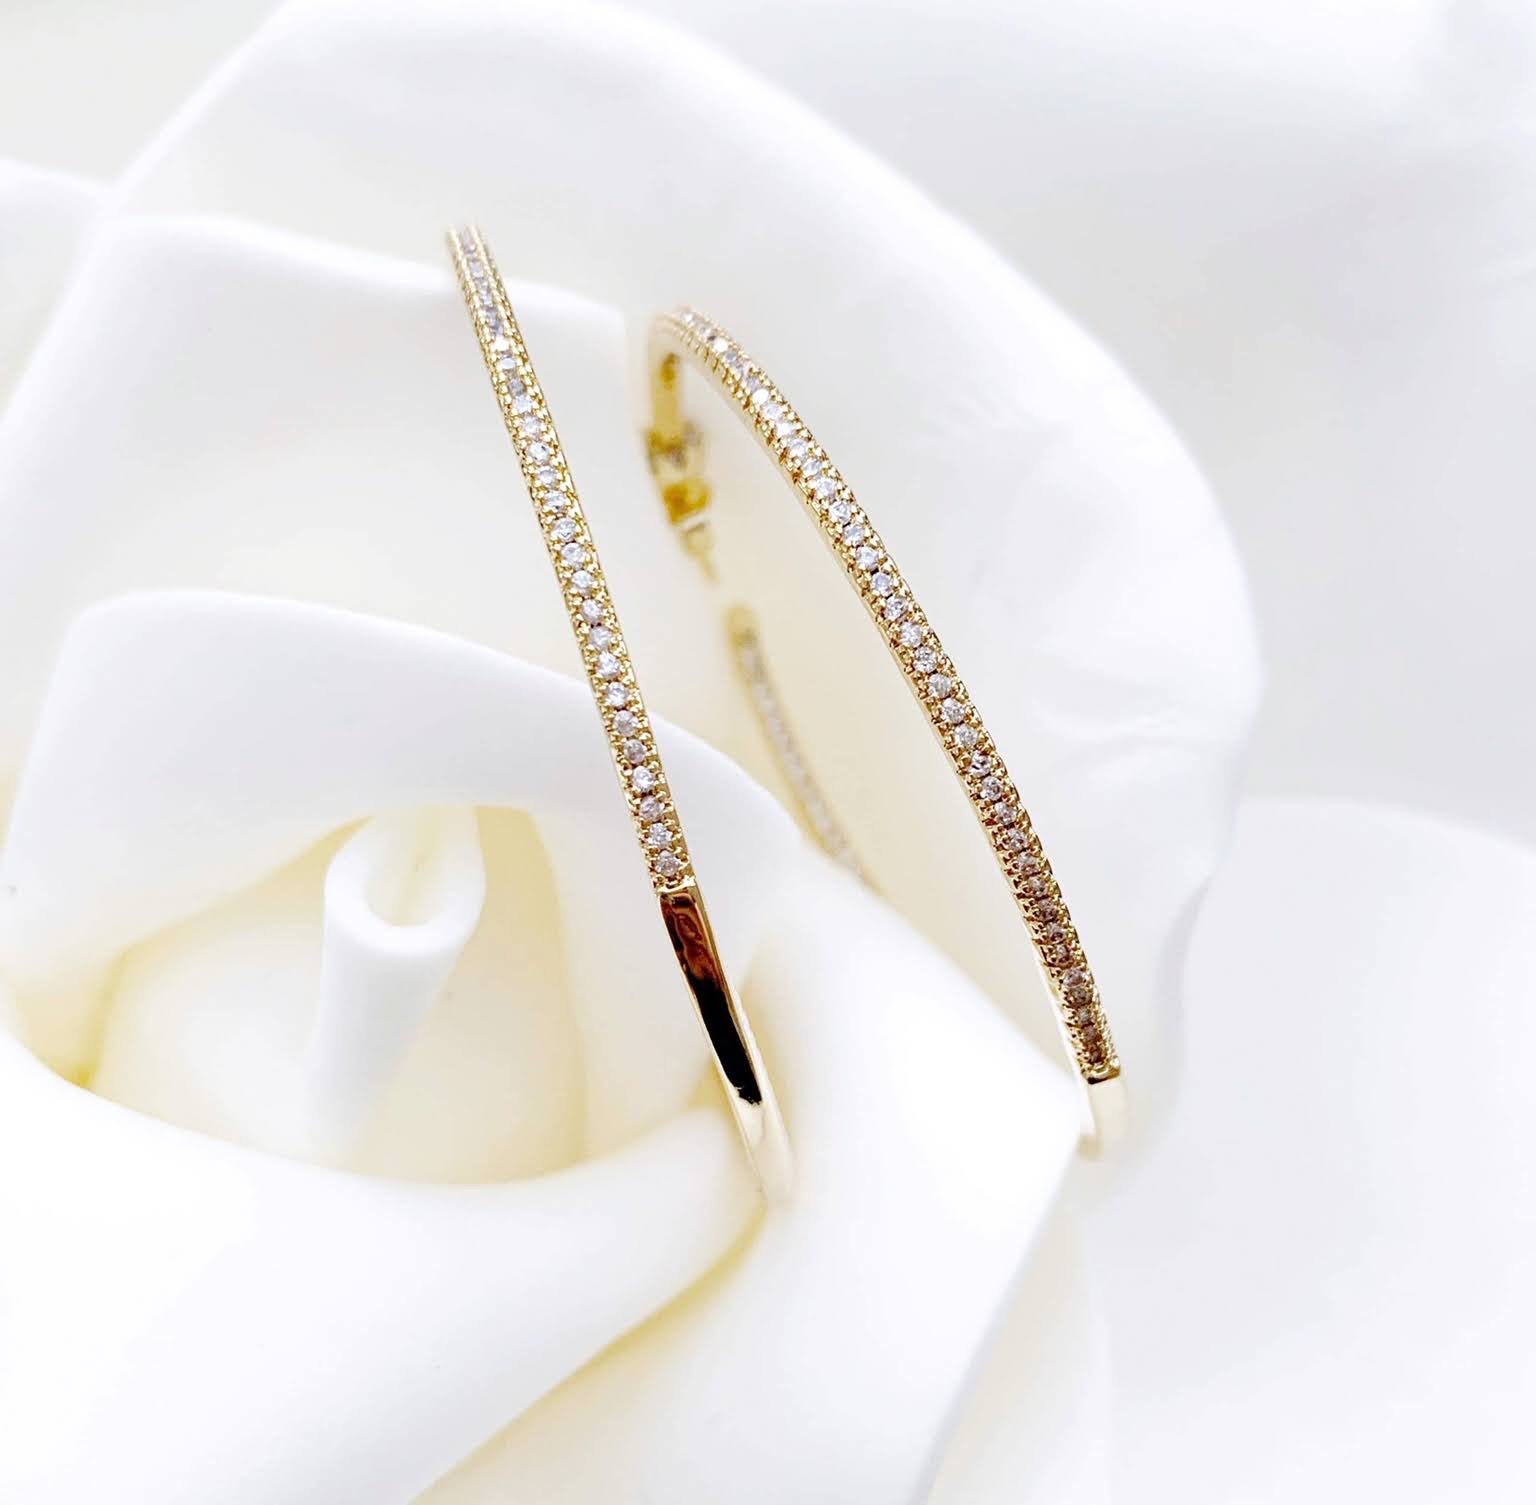 Big Gold CZ Encrusted Hoop Earrings - Best seller! - LJFjewelry